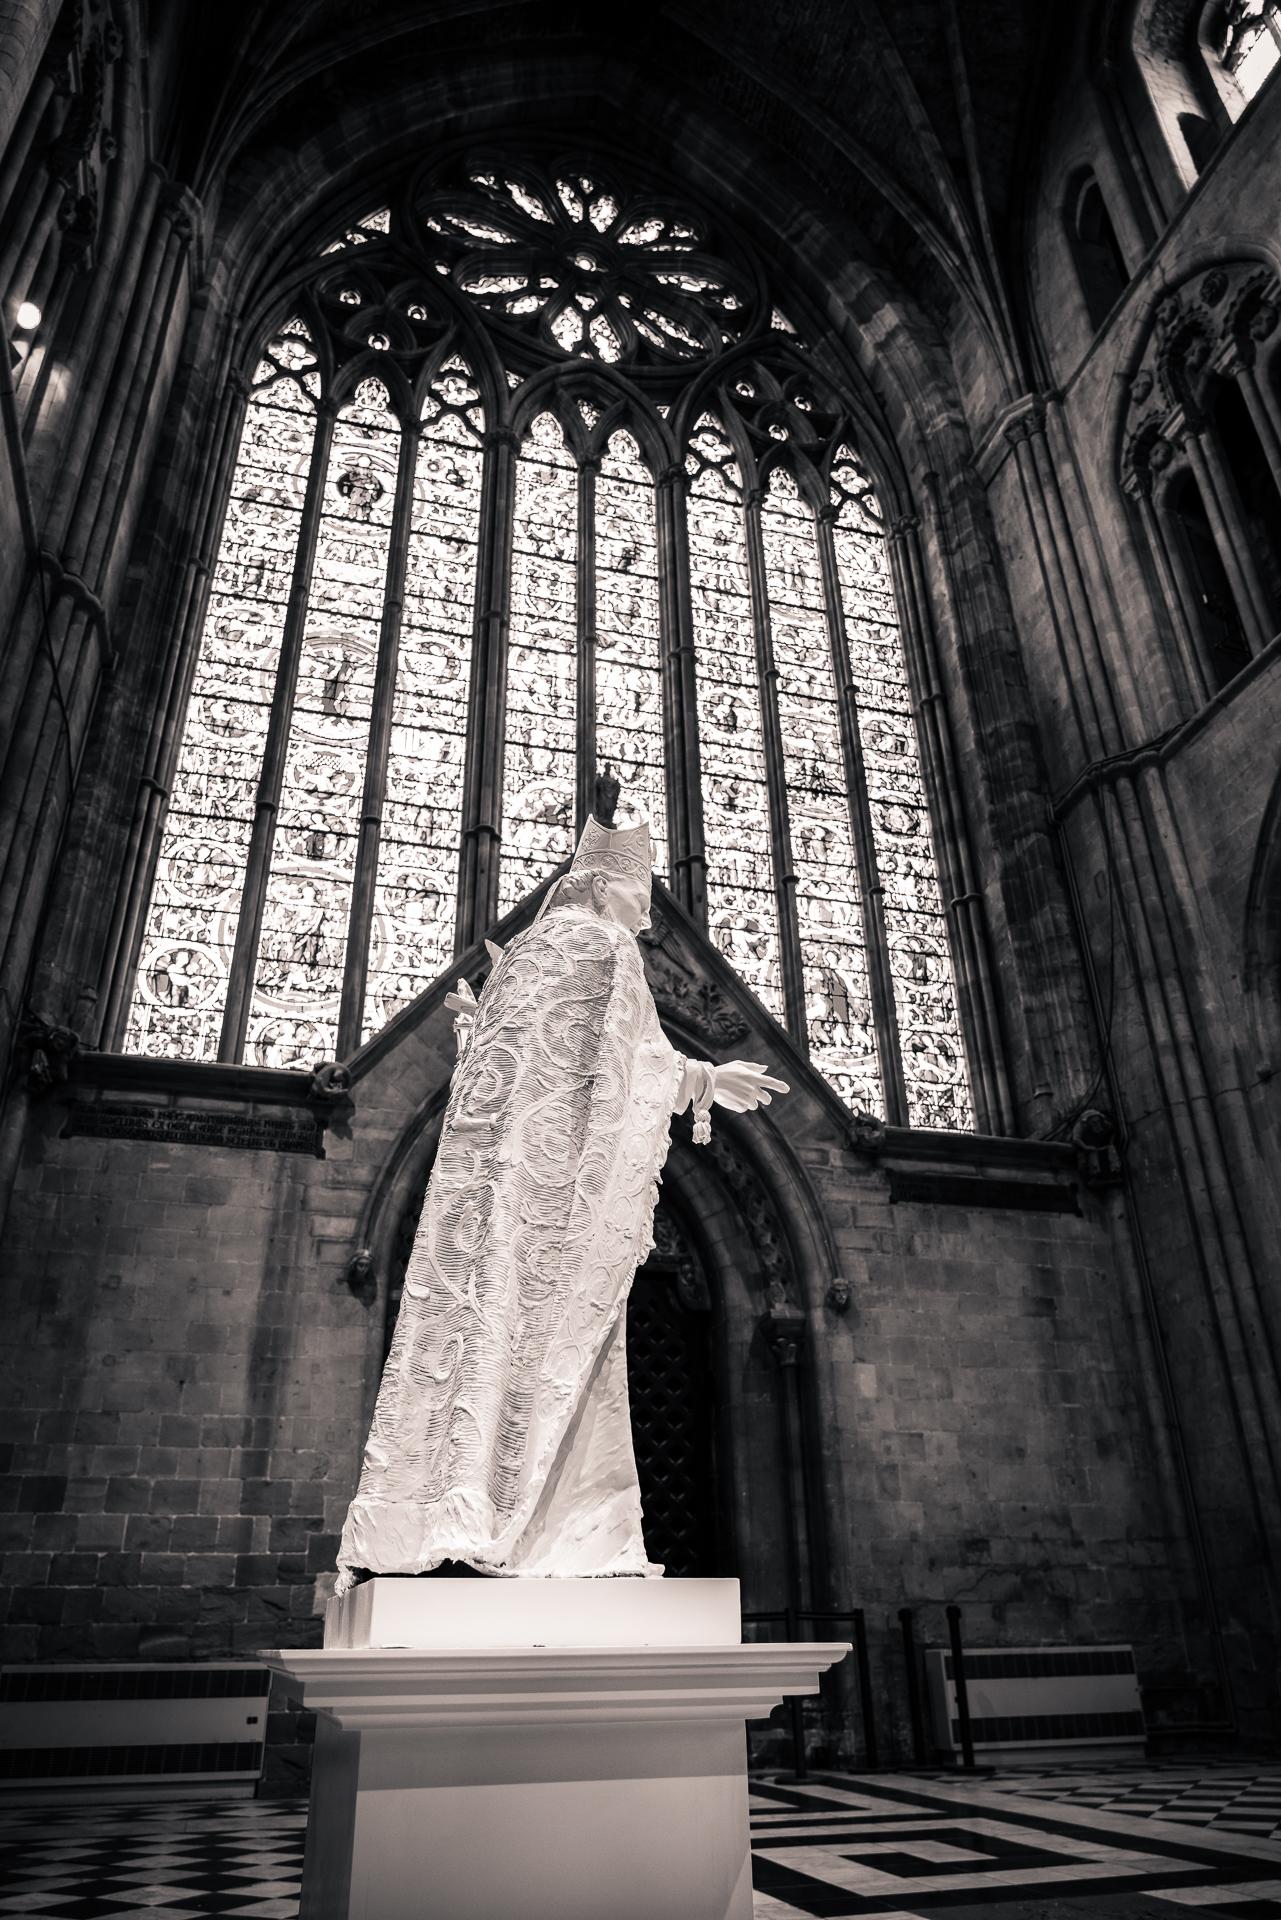 Diese Statue des Heiligen David, des Schutzpatrons von Wales, ist 150 cm hoch und historisch korrekt dargestellt. Davies schuf diese Statue nach umfangreichen und gründlichen Recherchen über das Leben des Heiligen aus dem 6. Jedes dargestellte